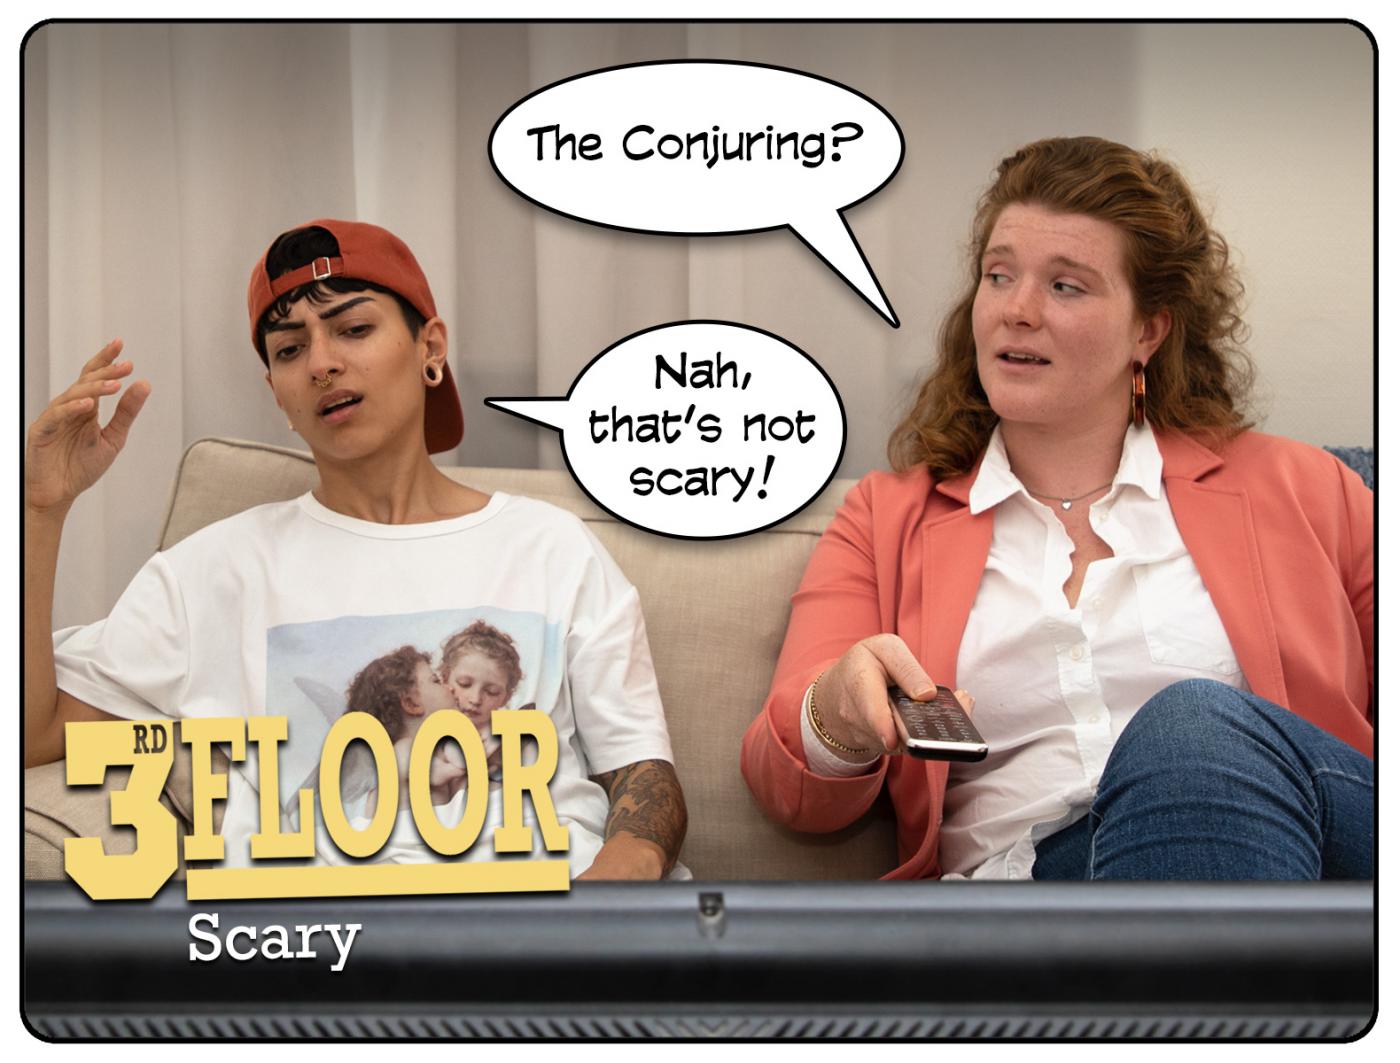 3rd Floor: Scary